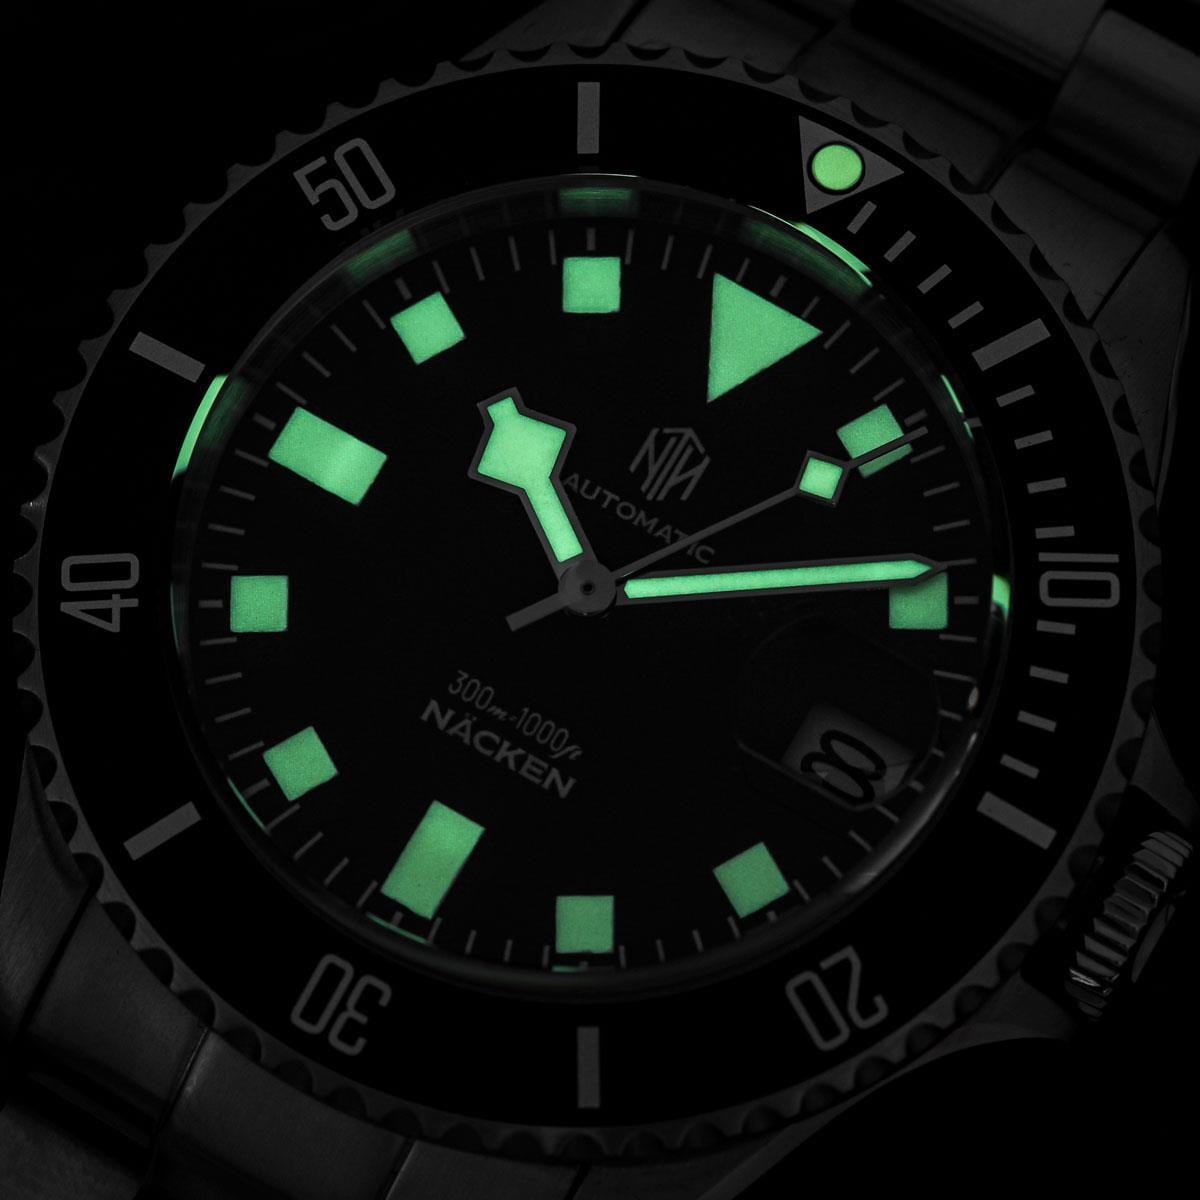 NTH Näcken Dive Watch - Admiral Blue - Ridge Nylon - WatchGecko Exclusive